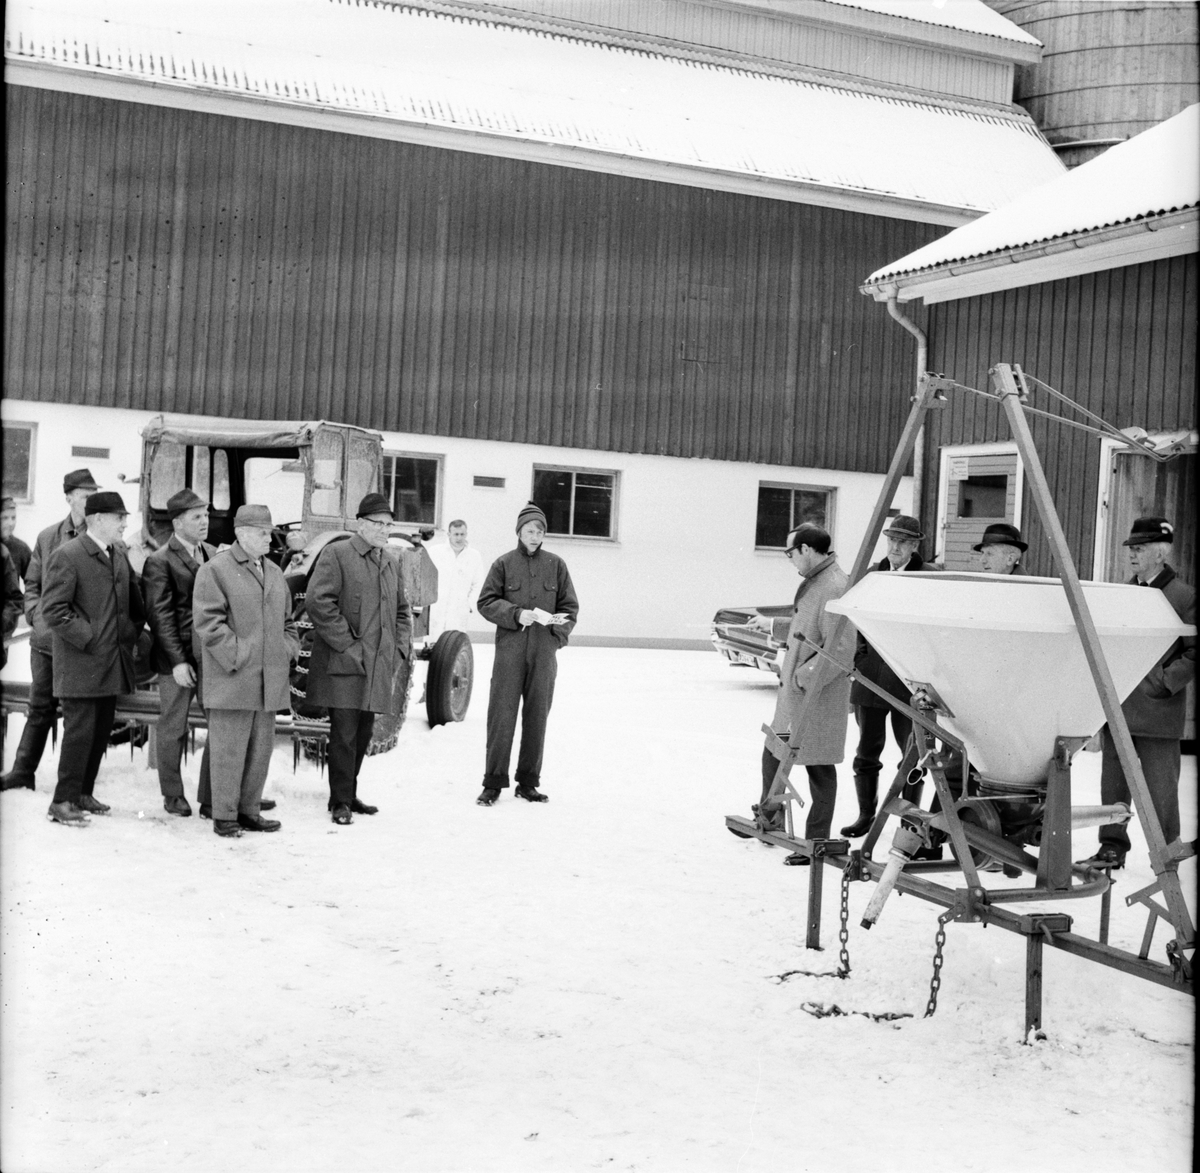 Arbrå,
Maskinvisning på Nytorp,
April 1969